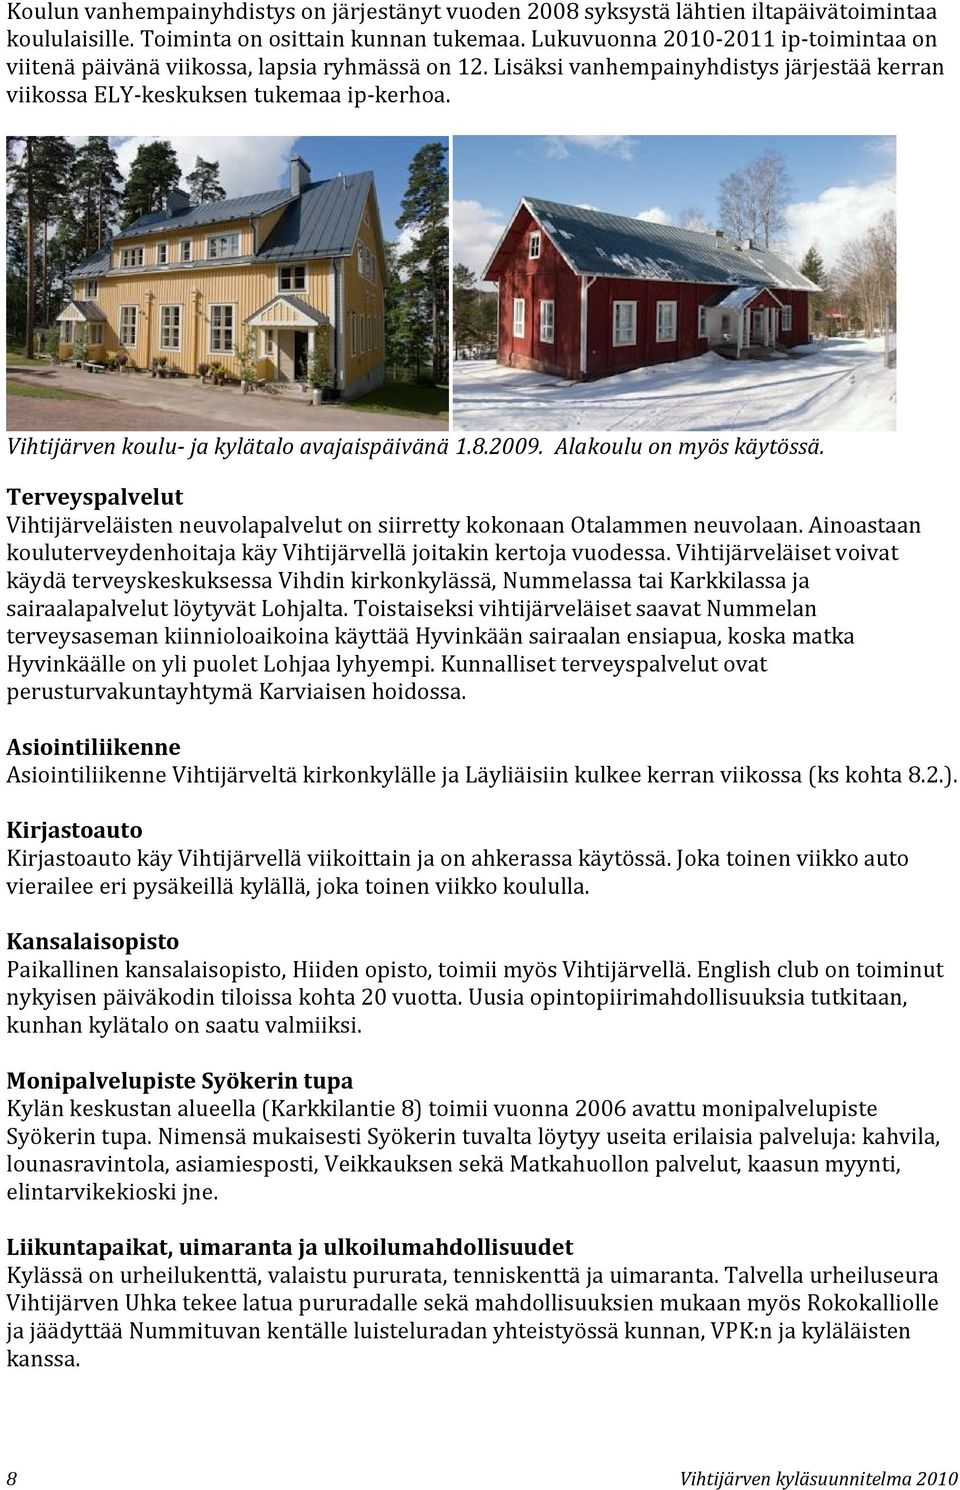 Vihtijärven koulu- ja kylätalo avajaispäivänä 1.8.2009. Alakoulu on myös käytössä. Terveyspalvelut Vihtijärveläisten neuvolapalvelut on siirretty kokonaan Otalammen neuvolaan.